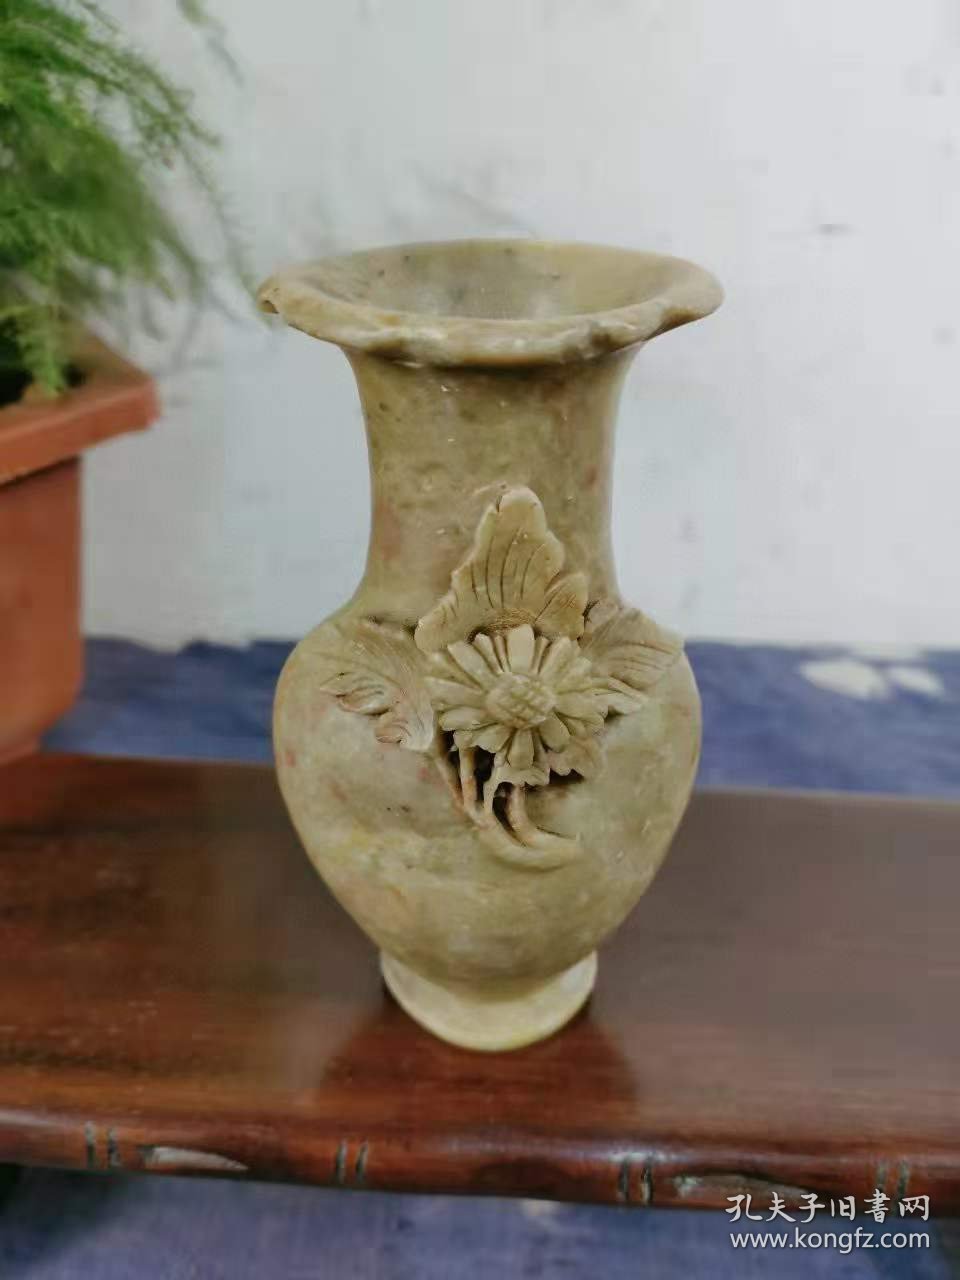 242_早期天然寿山石花瓶摆件一个。小夺天工，十分精美。陈设摆放很漂亮。天然保真寿山石。